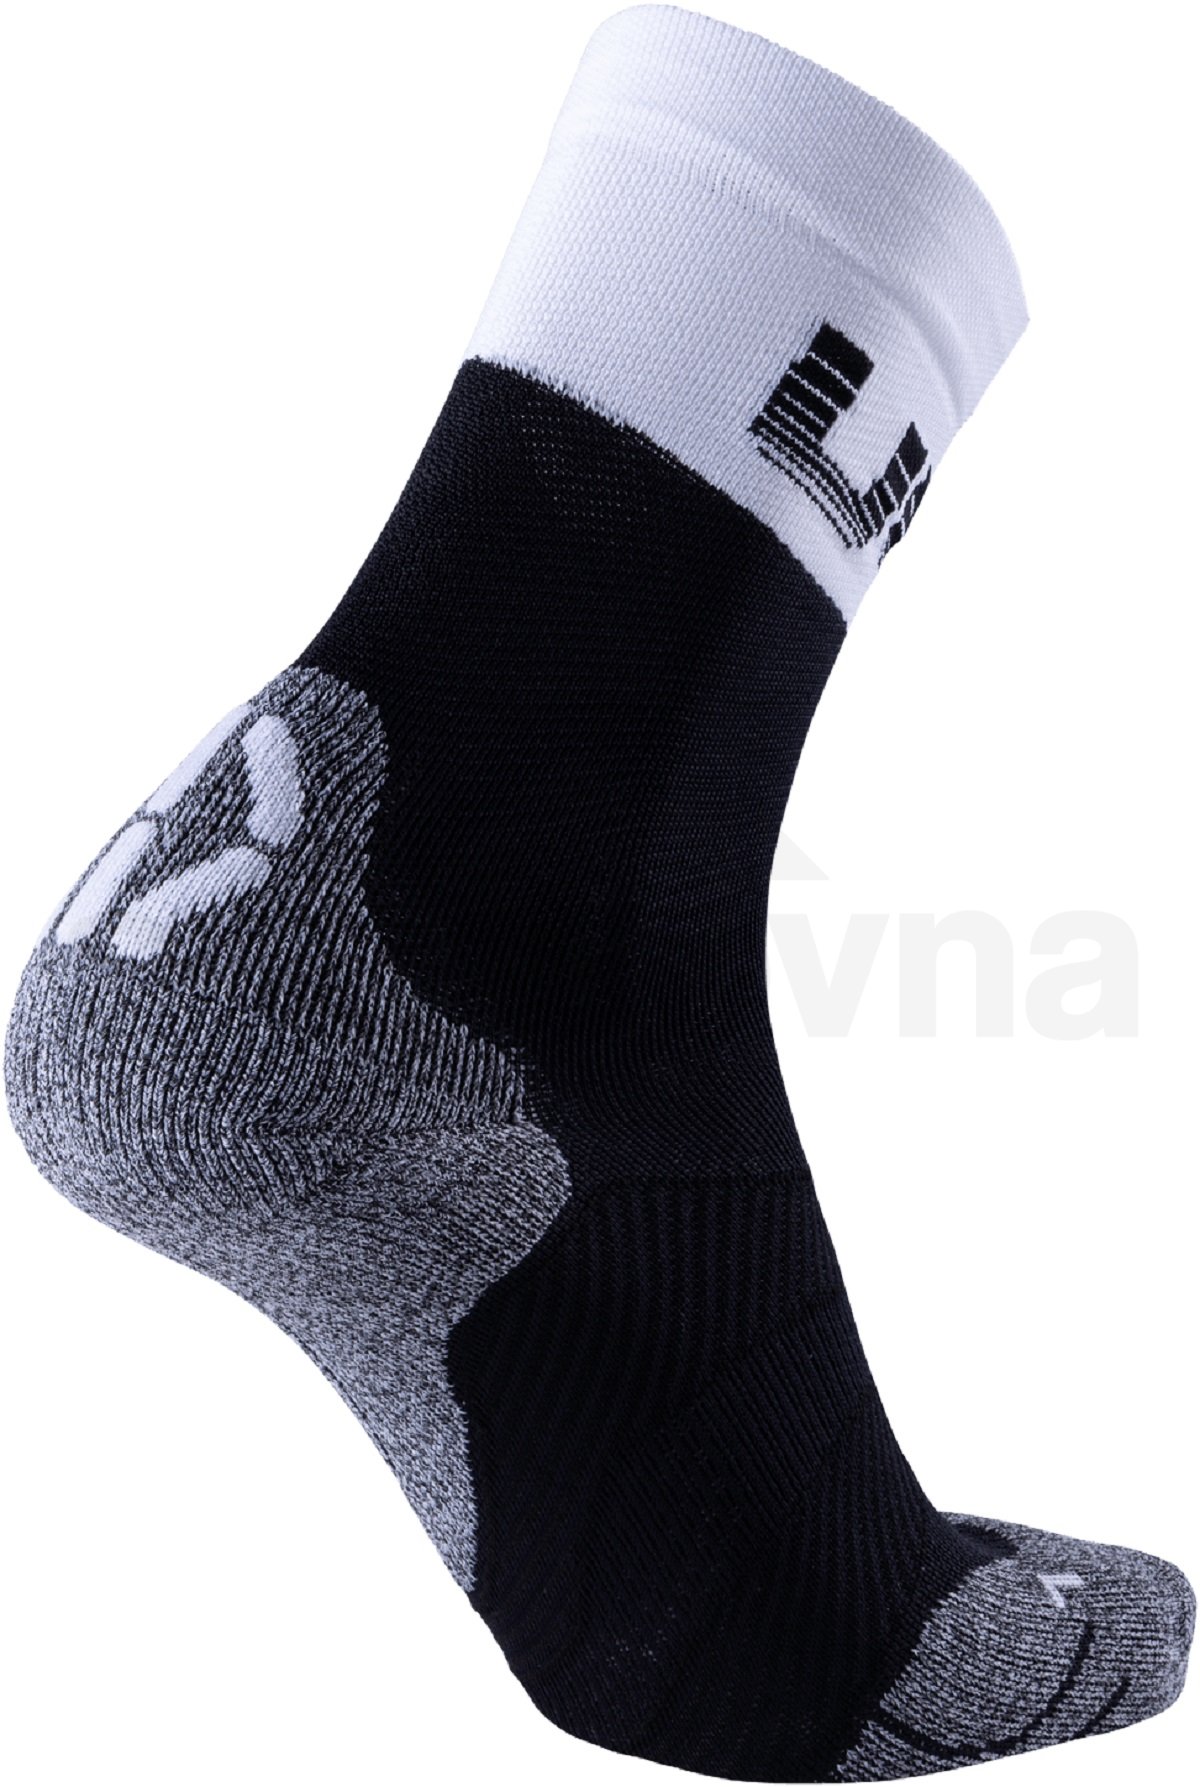 Ponožky UYN Cycling Light Socks M - černá/bílá